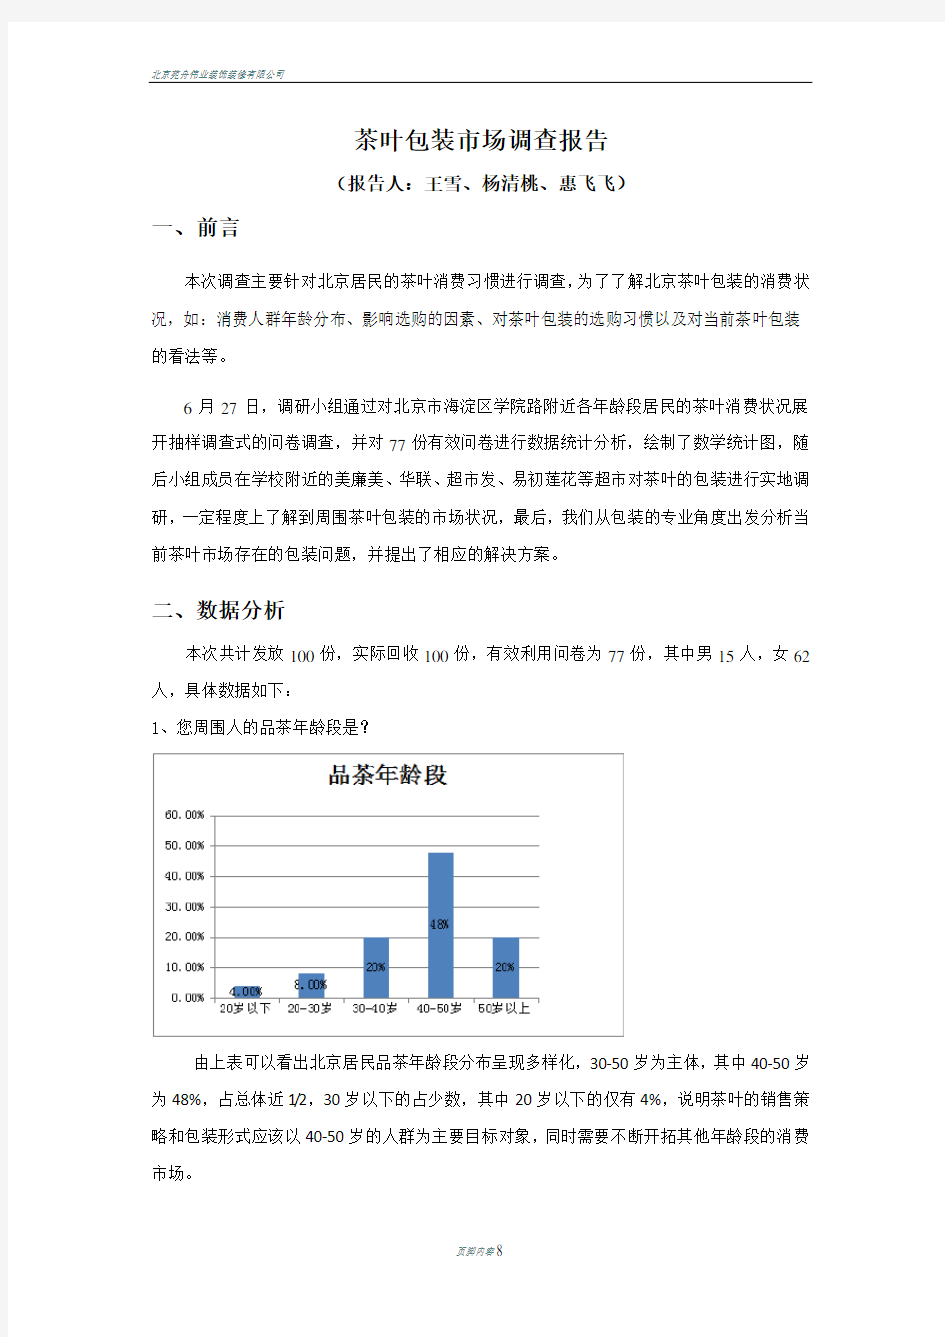 北京茶叶包装市场调查报告